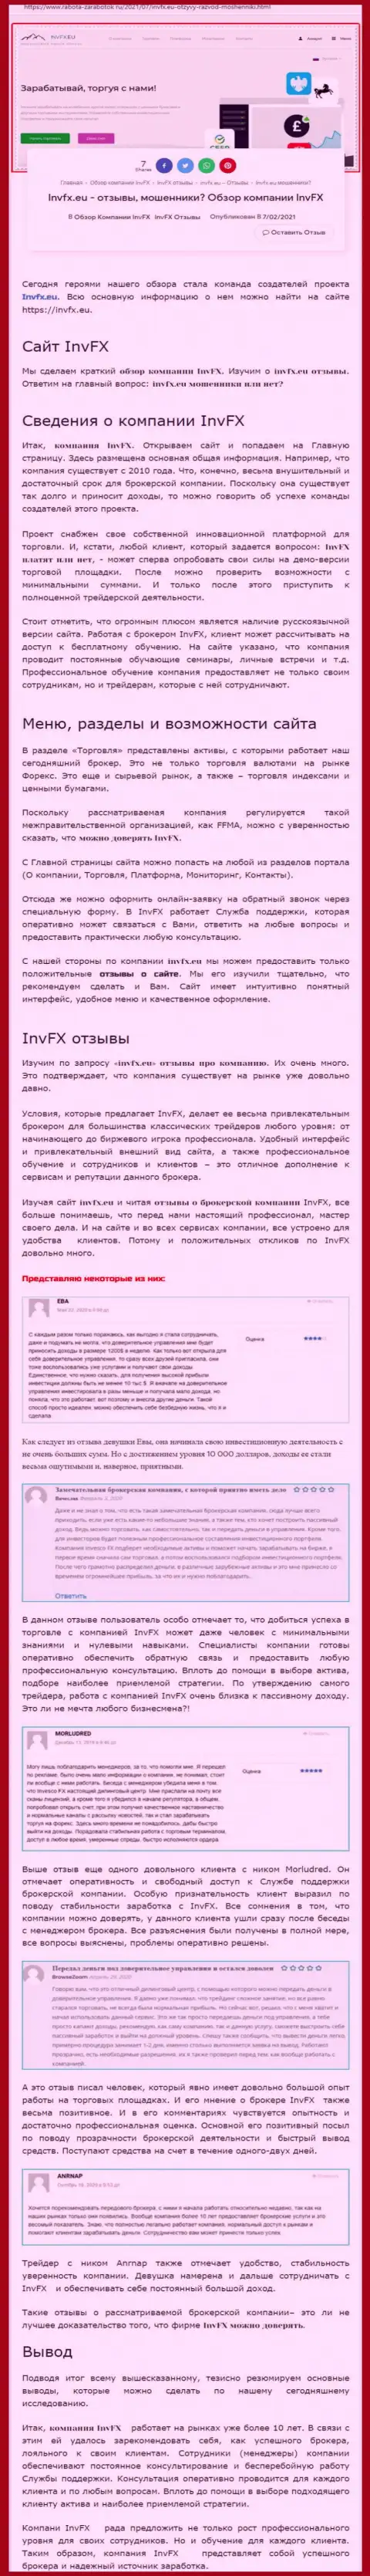 Информационный материал веб-сайта rabota zarabotok ru об форекс дилинговом центре INVFX Eu